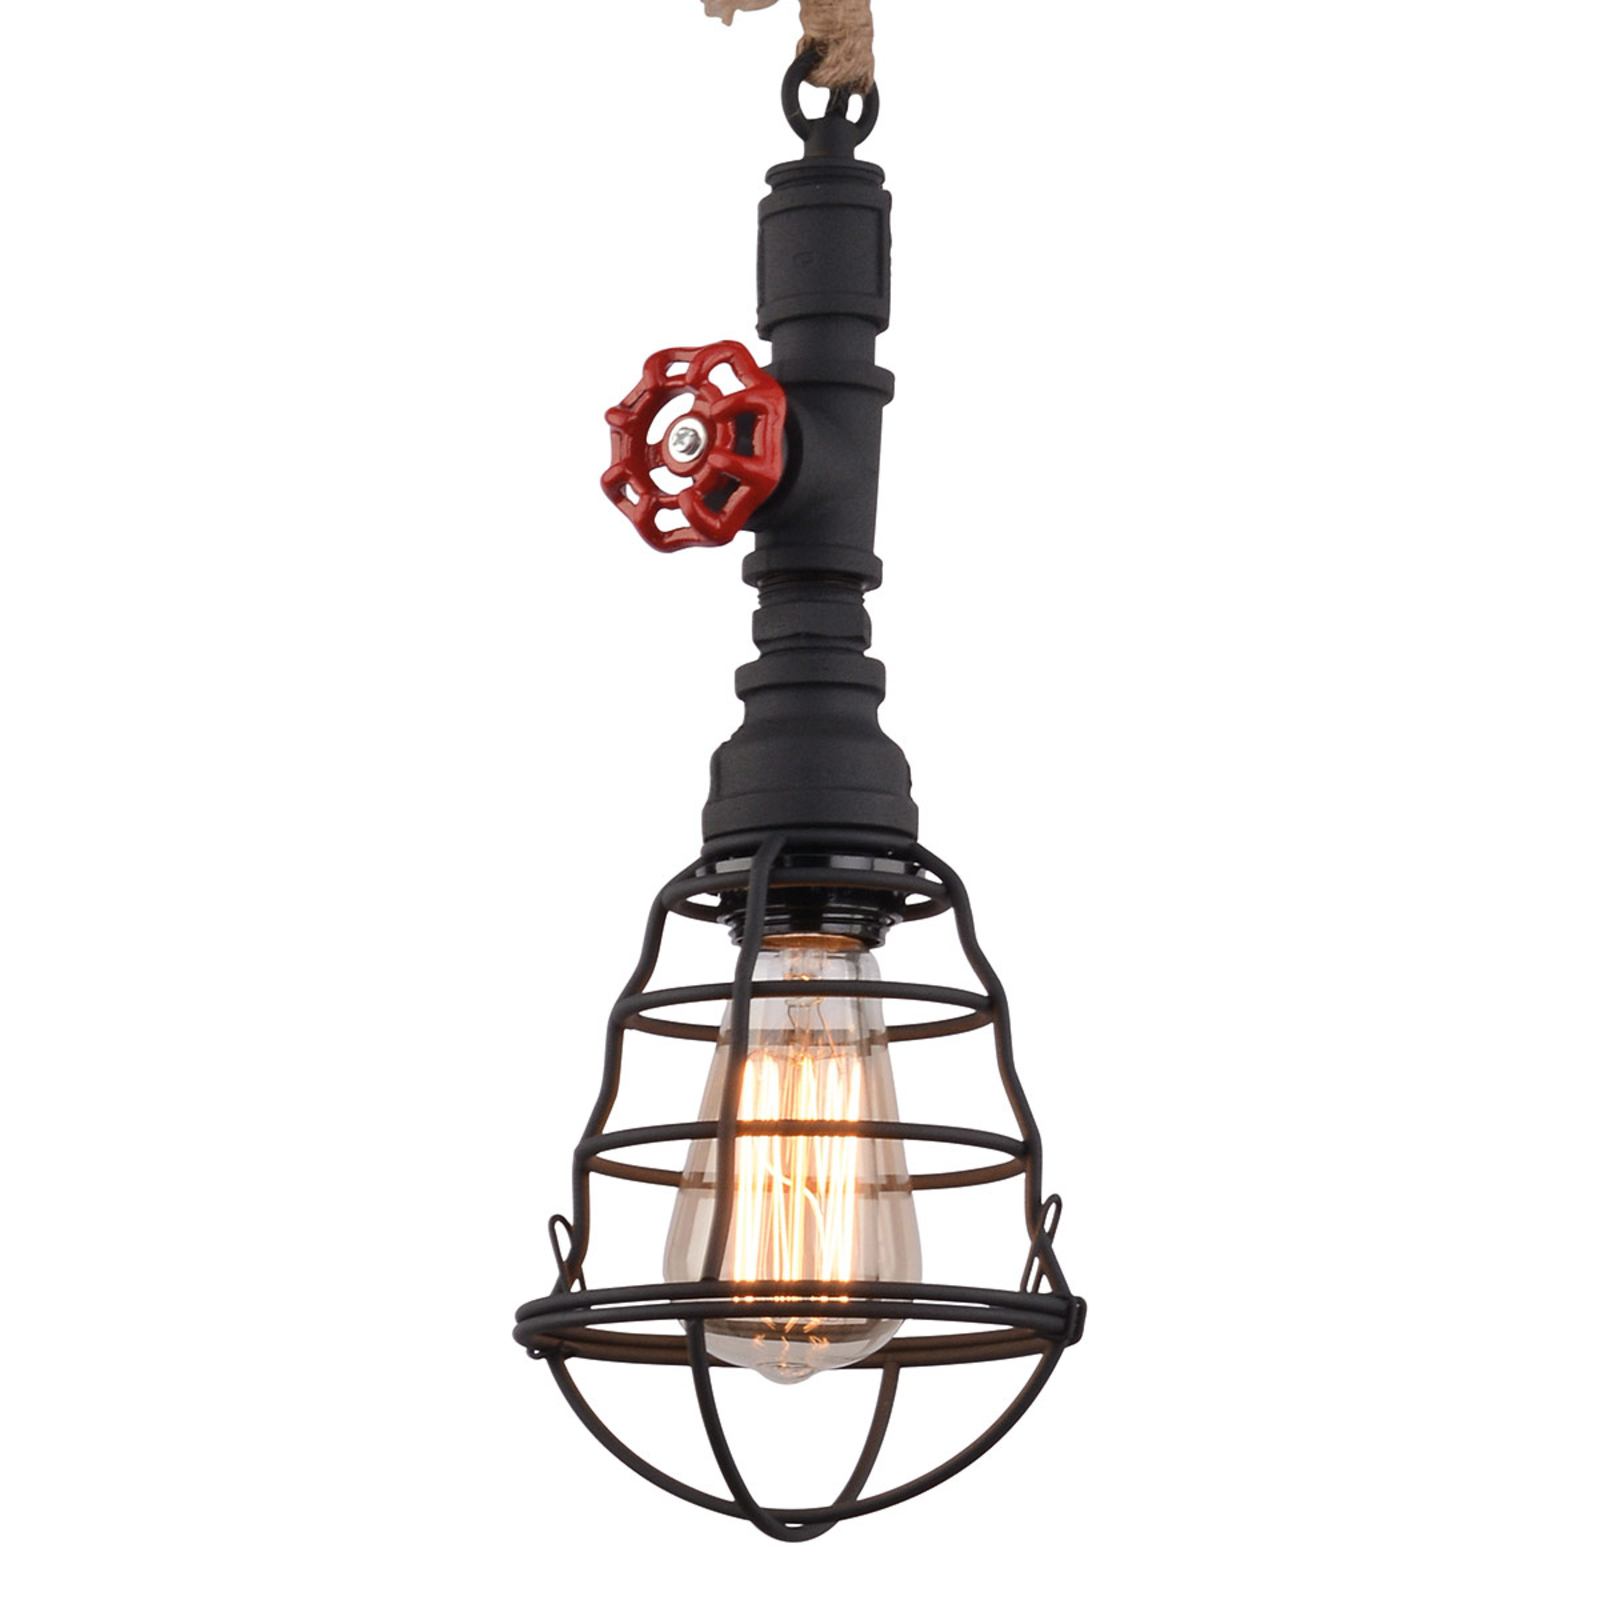 Hanglamp in industrieel ontwerp, zwart